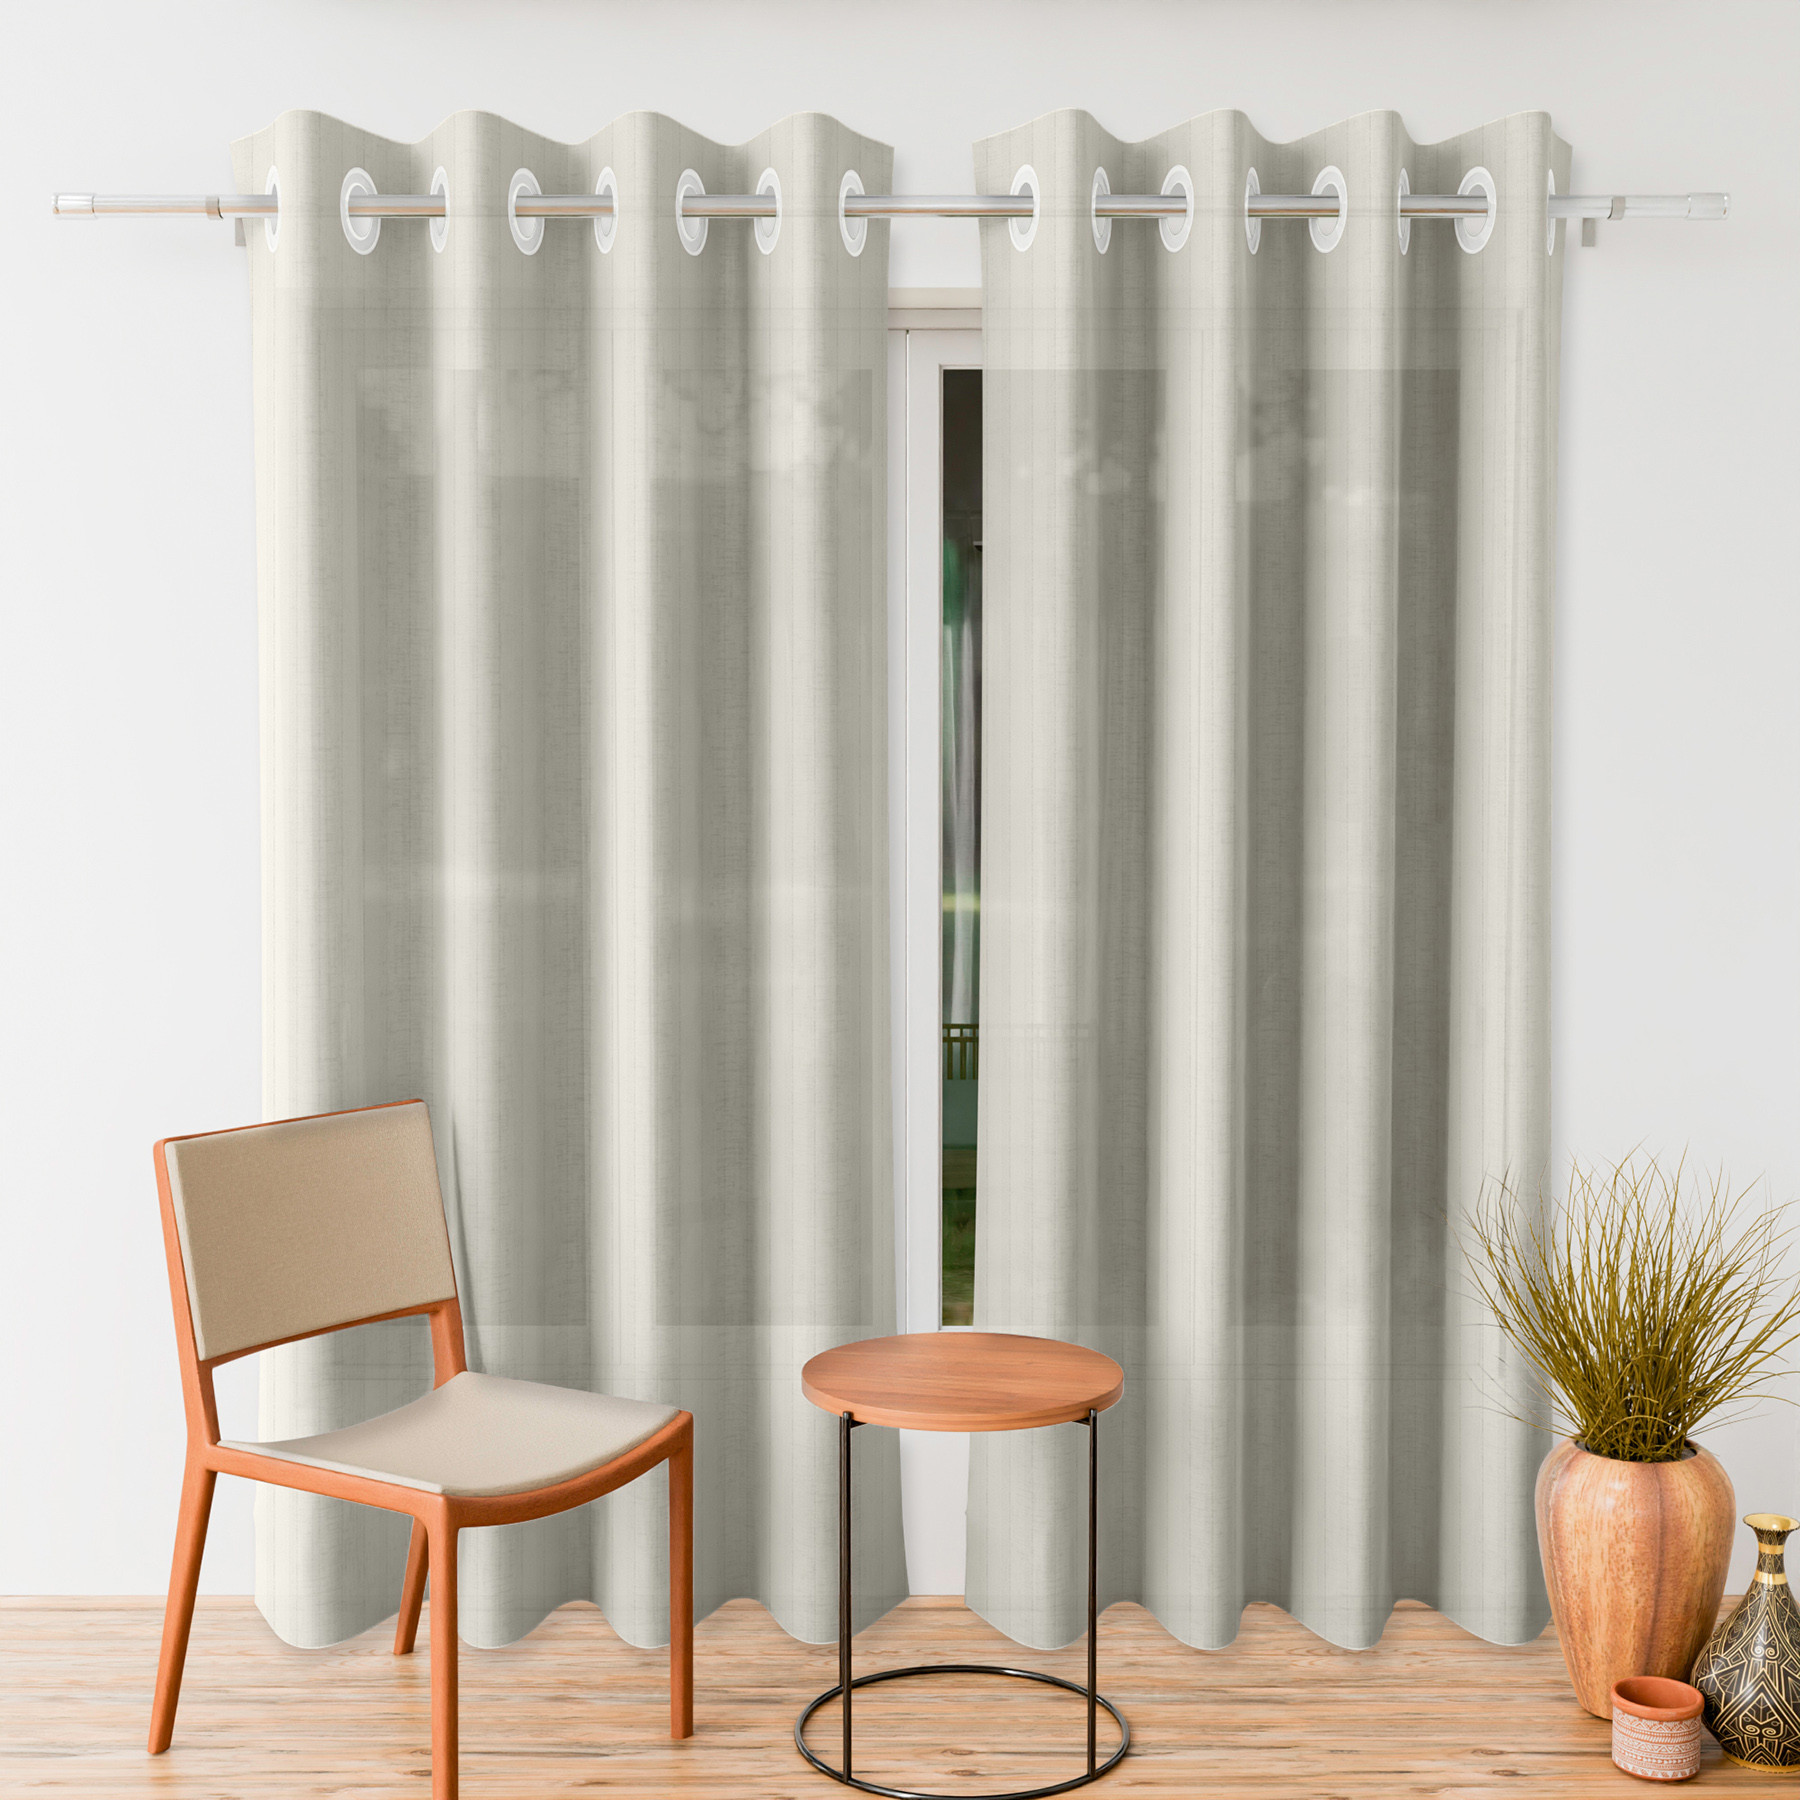 Kuber Industries Door Curtain | Sheer Door Curtains | Parda for Living Room | Bedroom Balcony Parda | Door Curtain Parda for Home Décor | Lining Net | 7 Feet | Cream